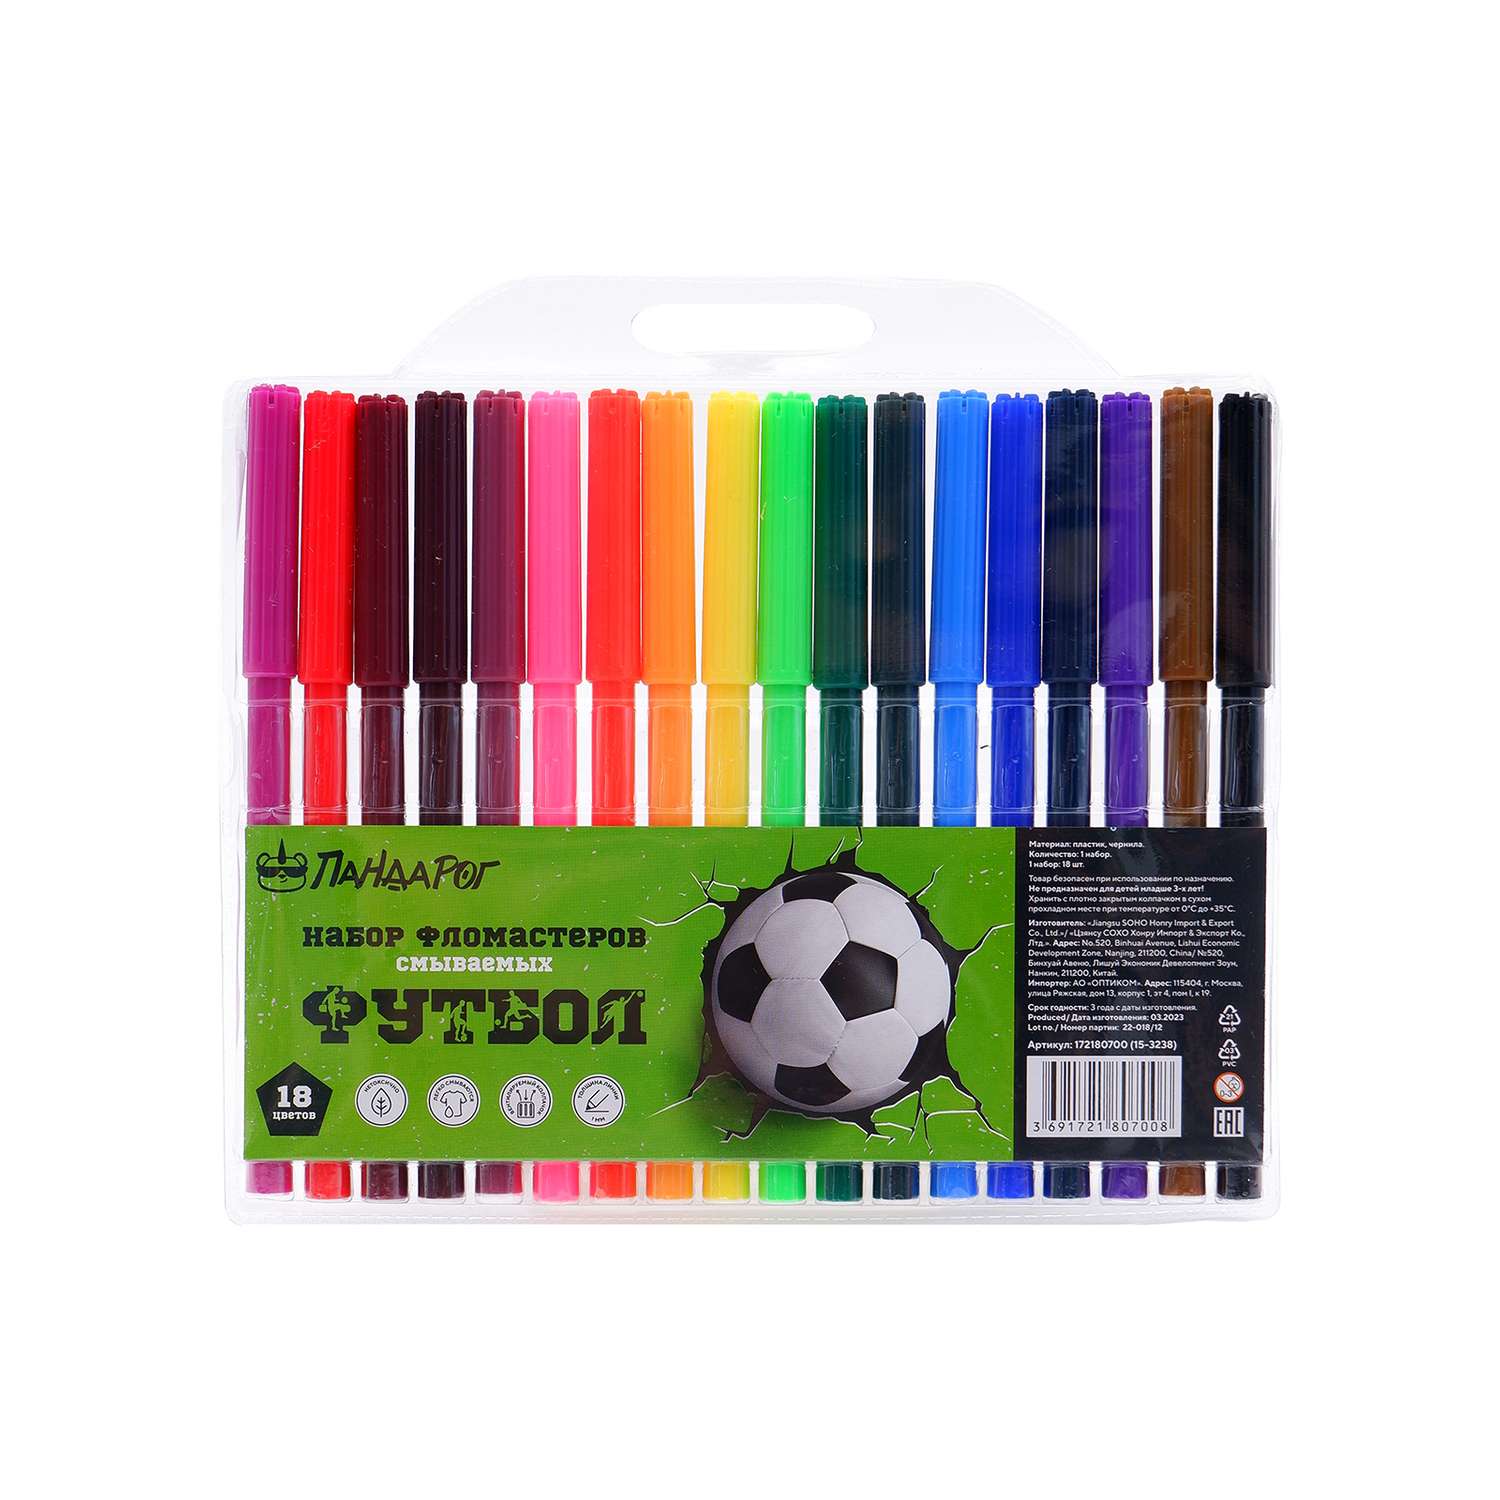 Набор фломастеров ПАНДАРОГ Football 18 цвет вентилируемый колпачок в цвет чернилв пластиковом блистере смываемые - фото 1